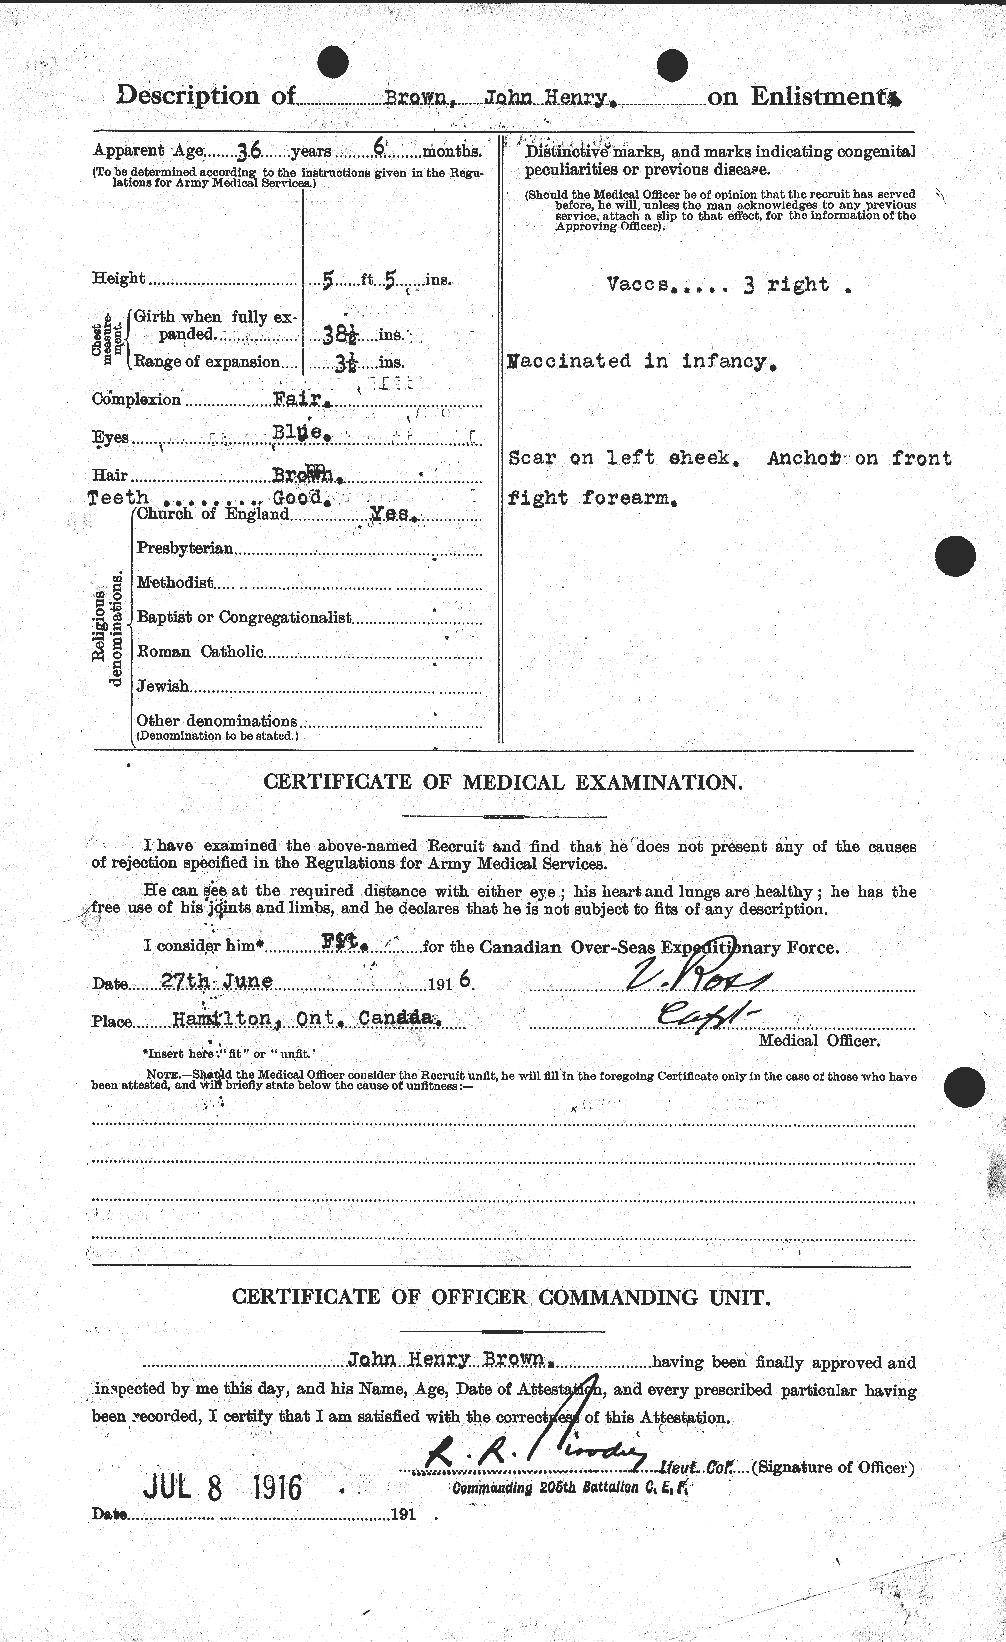 Dossiers du Personnel de la Première Guerre mondiale - CEC 264618b